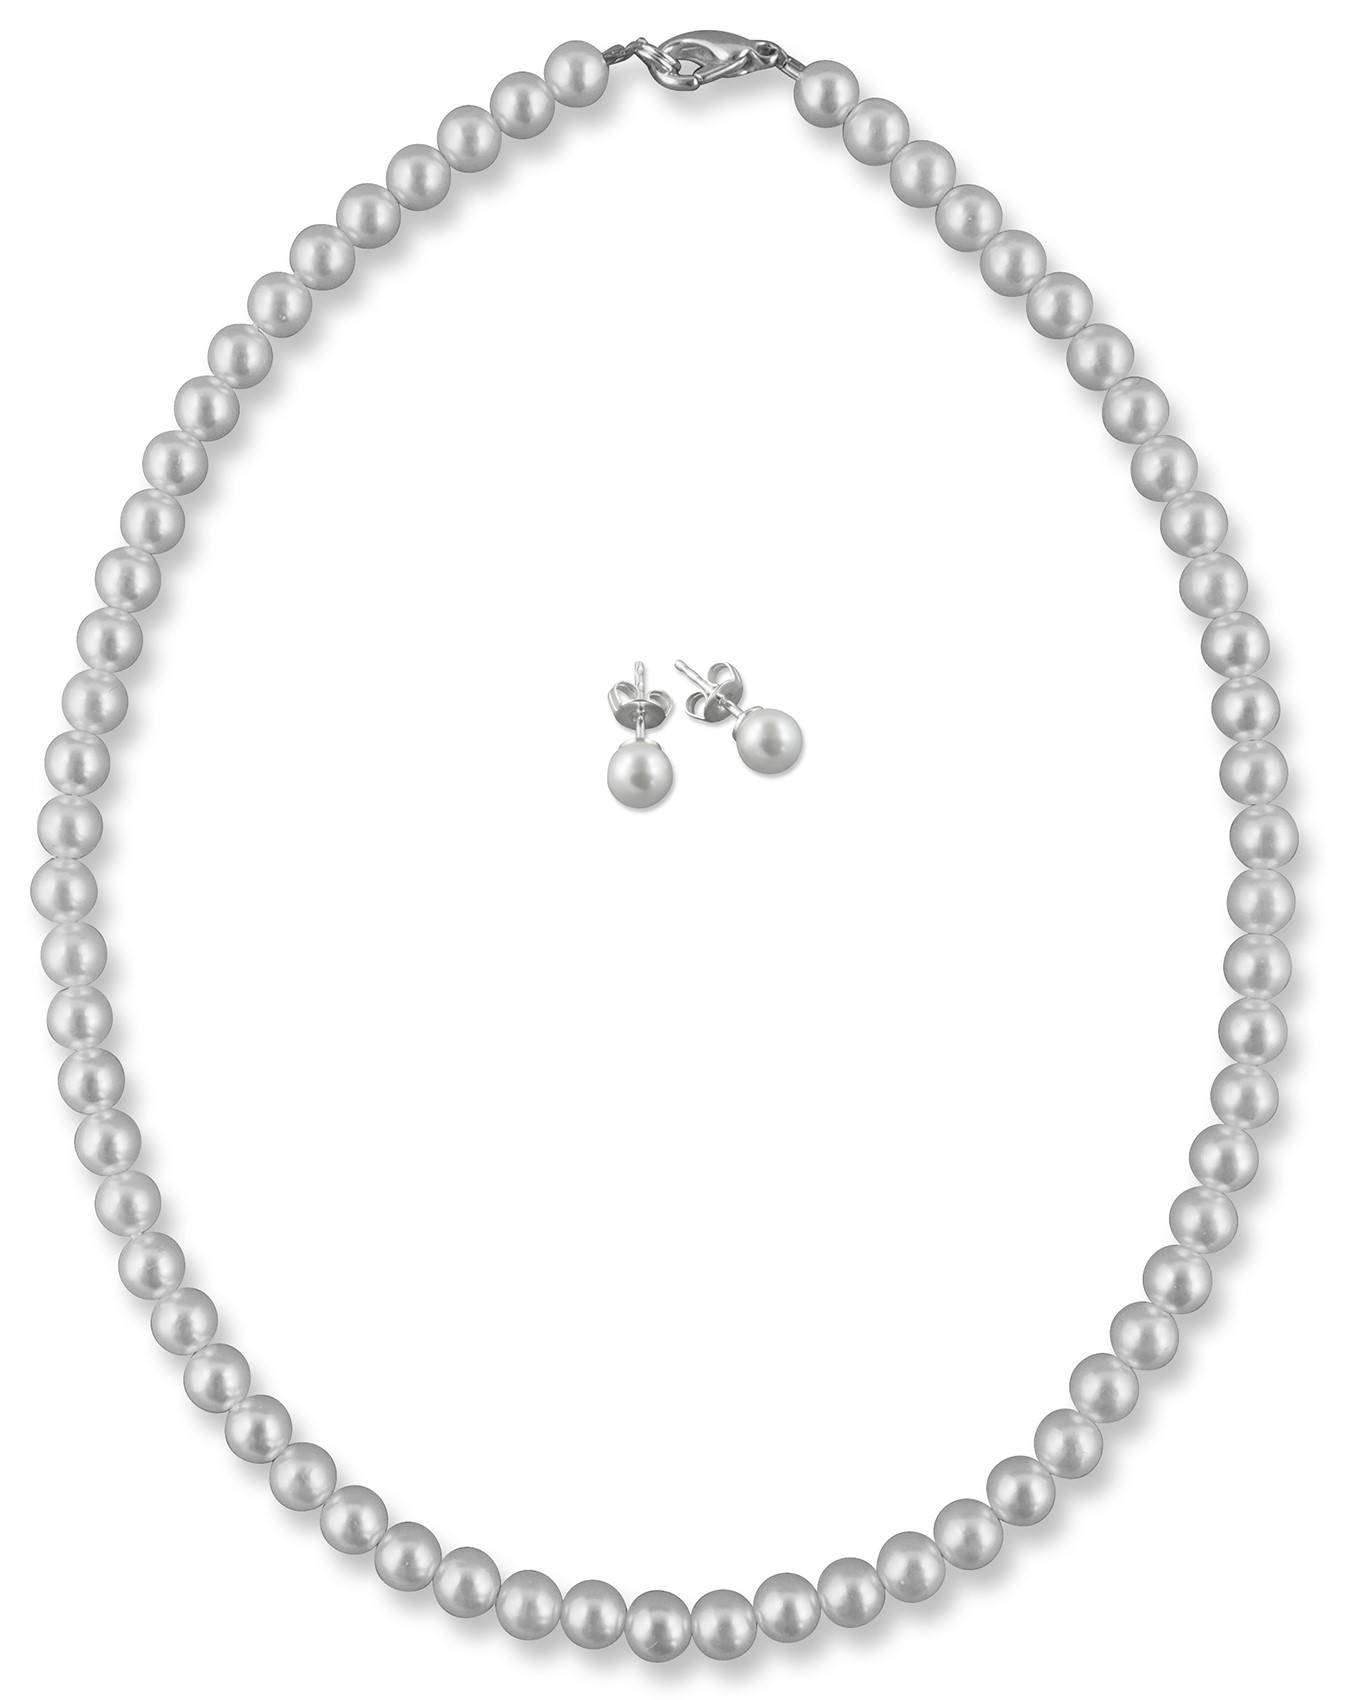 Bild von Brautschmuck Set Perlen 6 mm Kette 38 cm 925 Silber